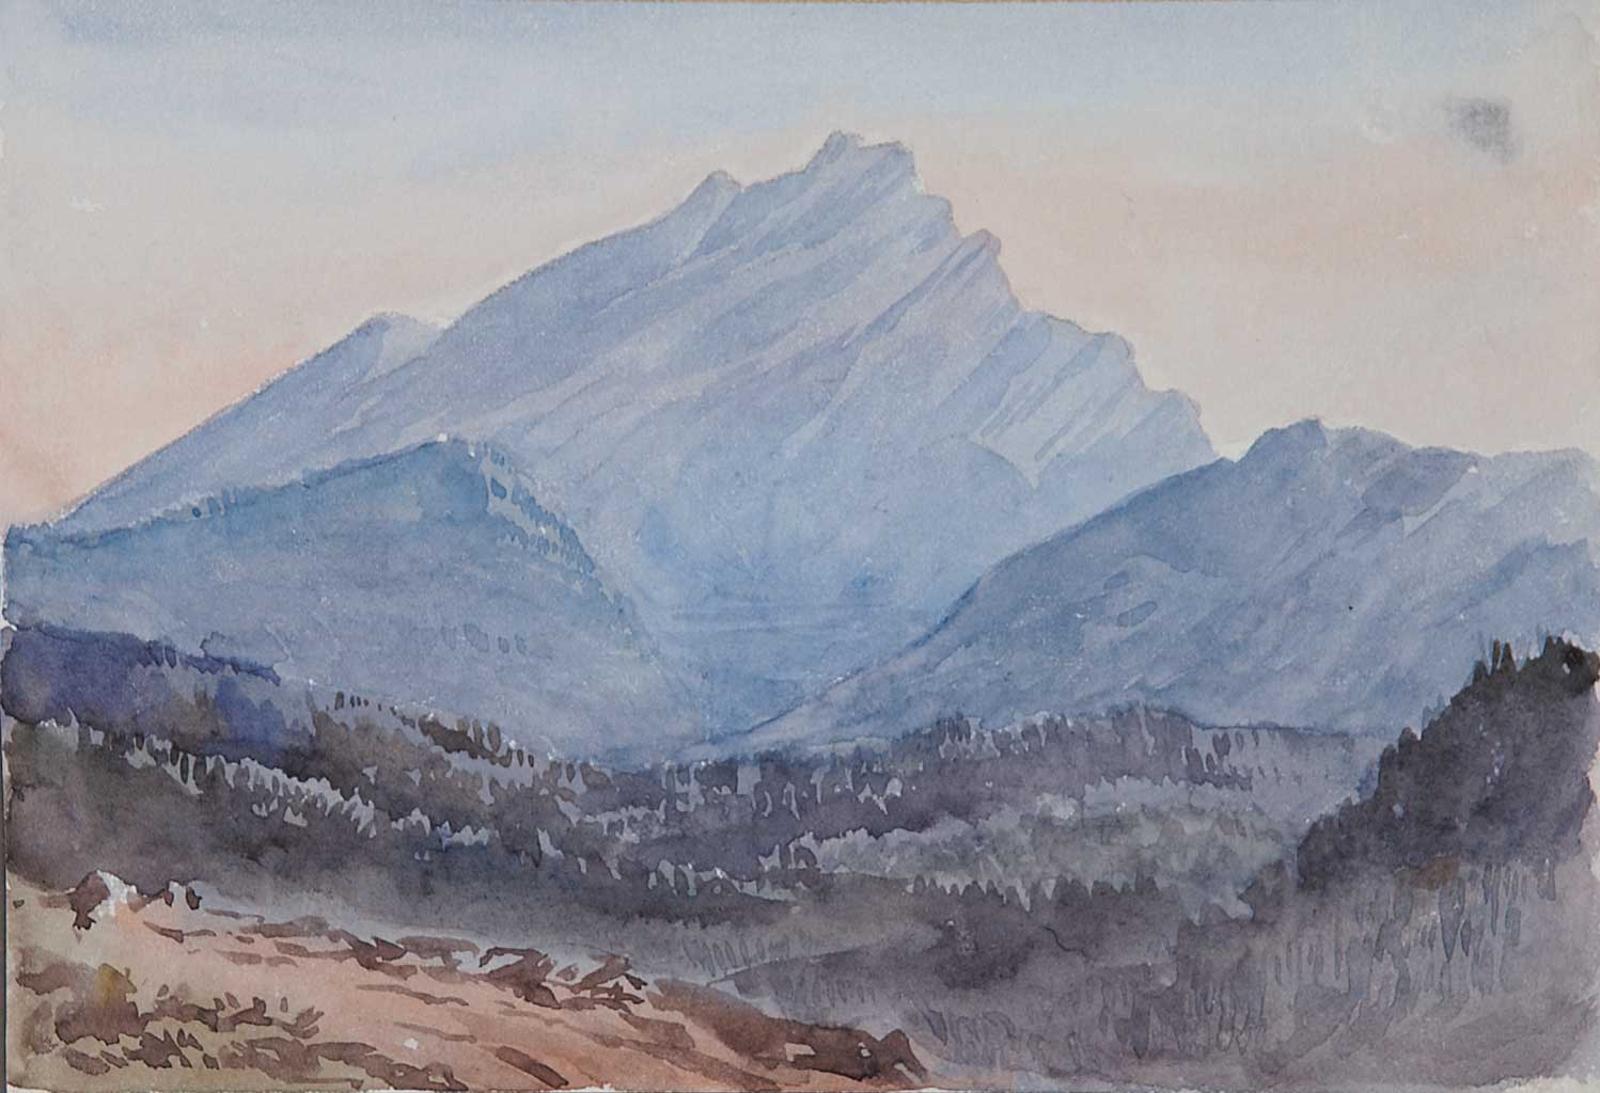 M. W. L. School - Banff, Canada, 1889 [Mount Rundle]